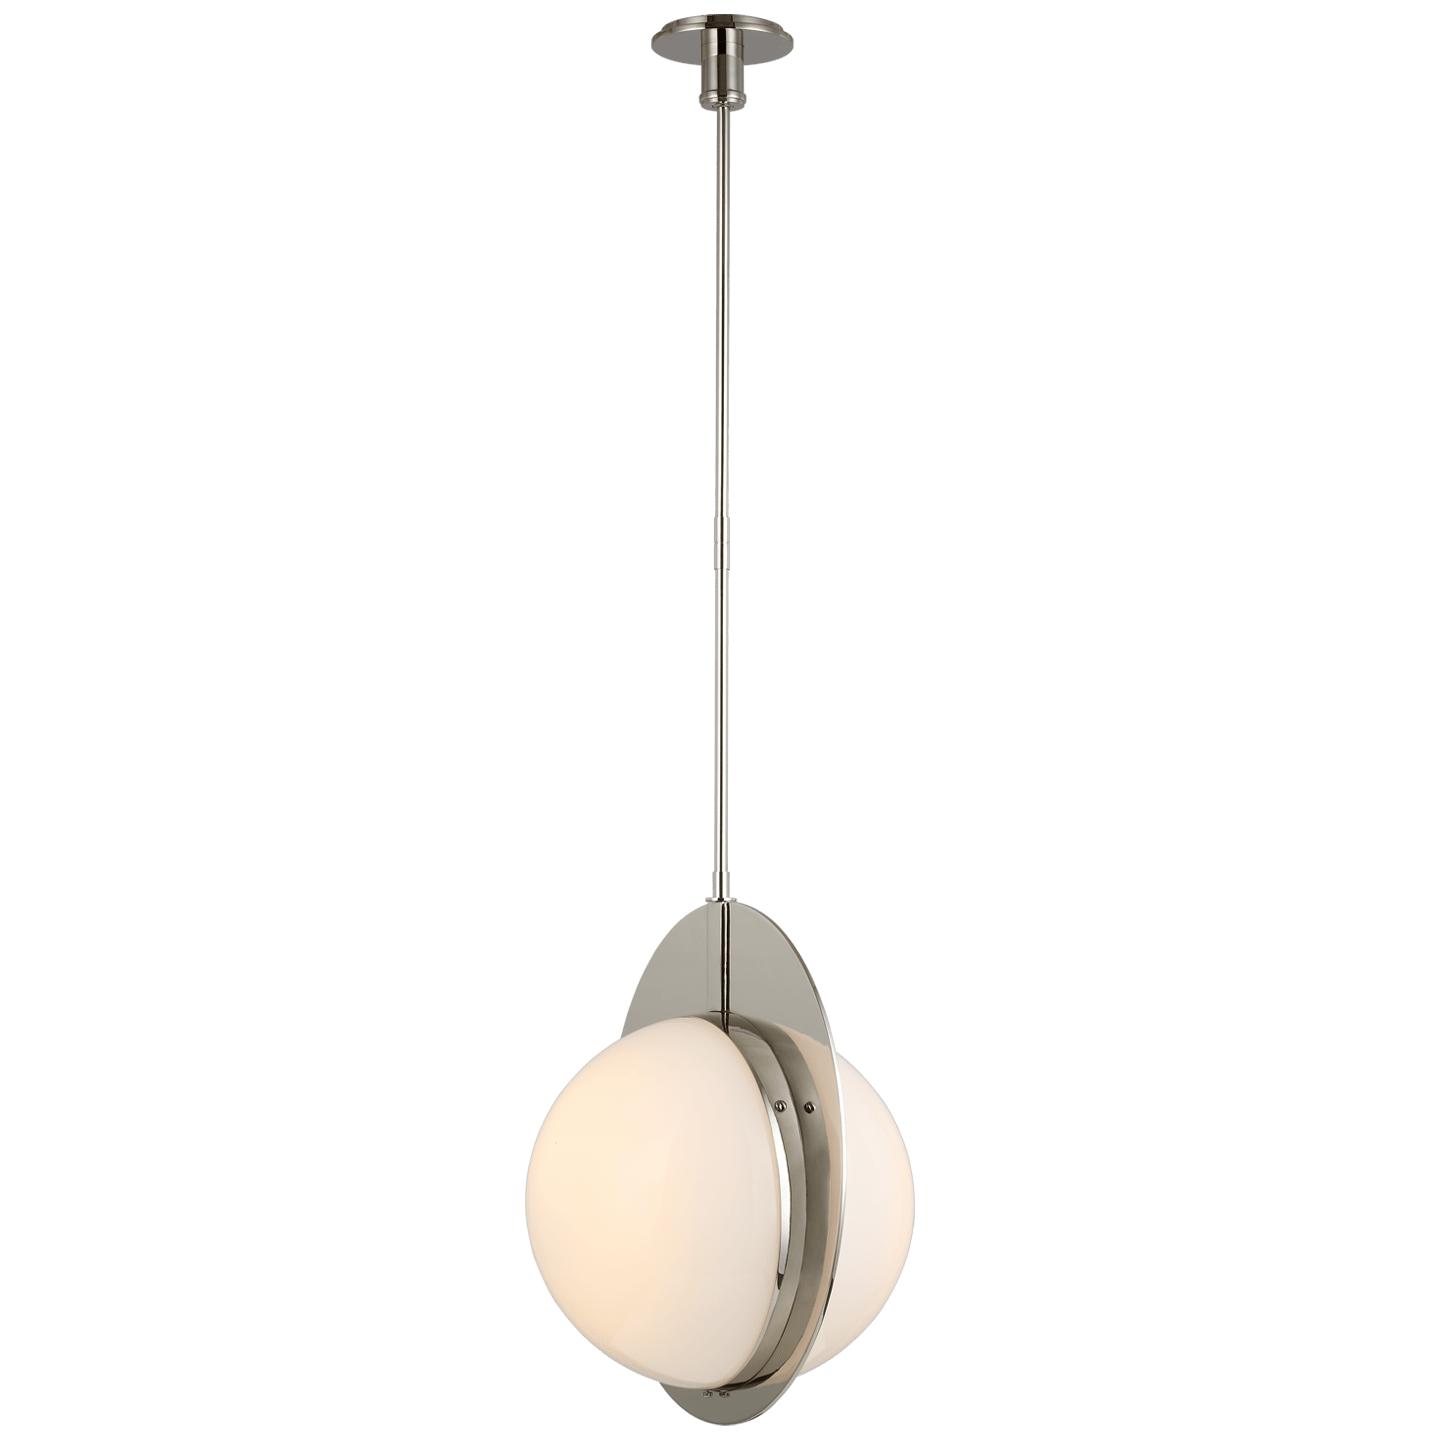 Купить Подвесной светильник Quando Large Globe Pendant в интернет-магазине roooms.ru